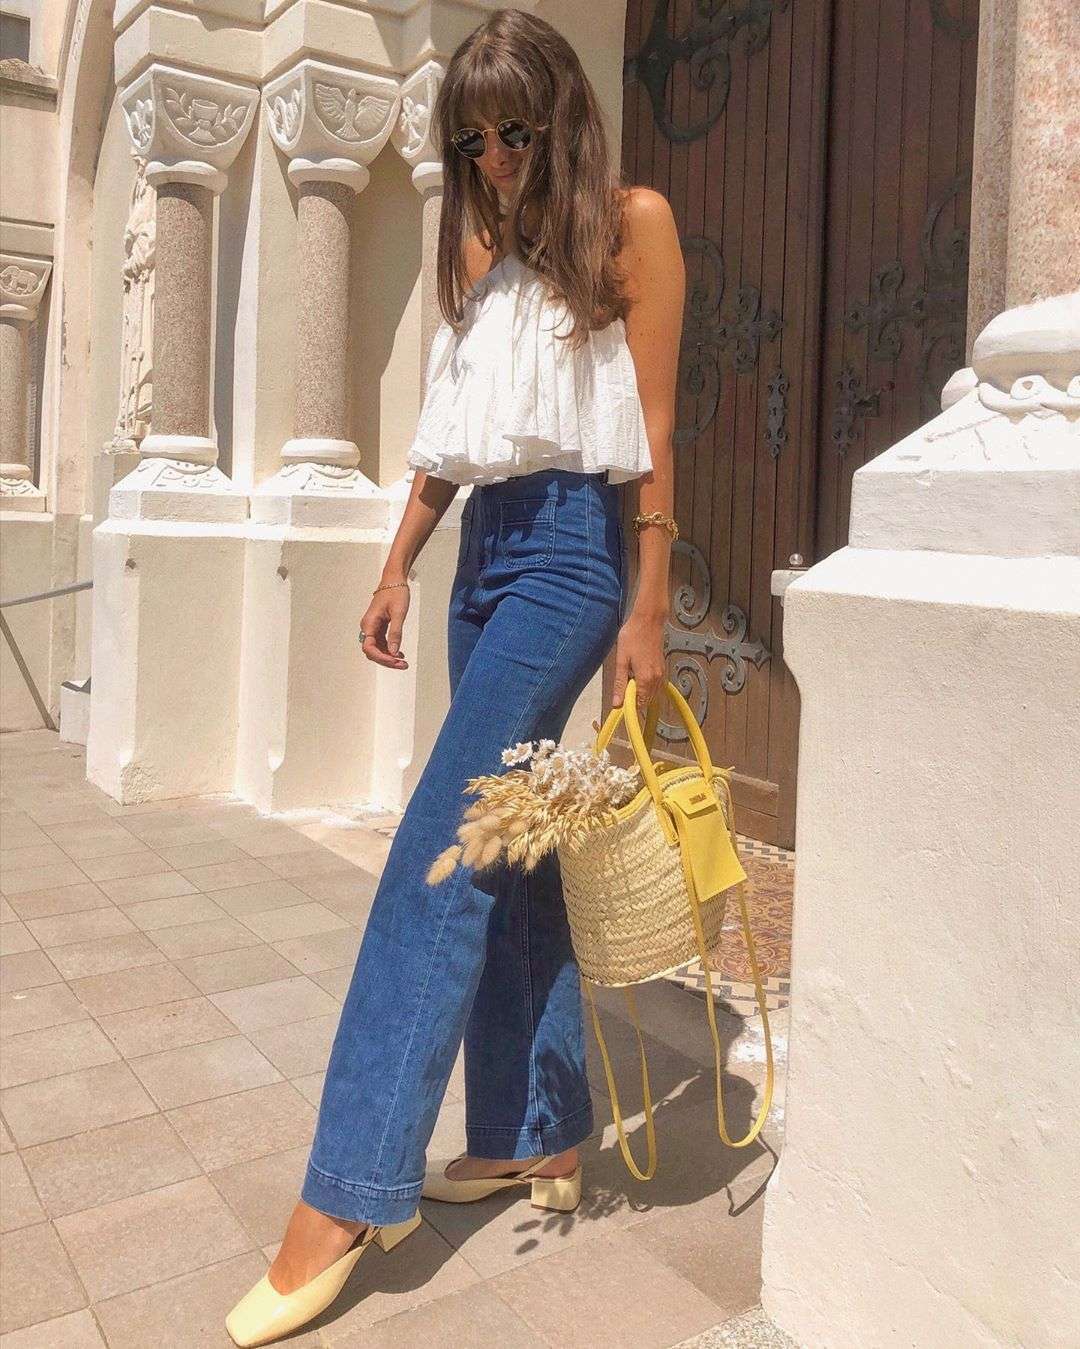 Як літом одягаються французькі жінки: 50 прикладів з Instagram - фото 484296